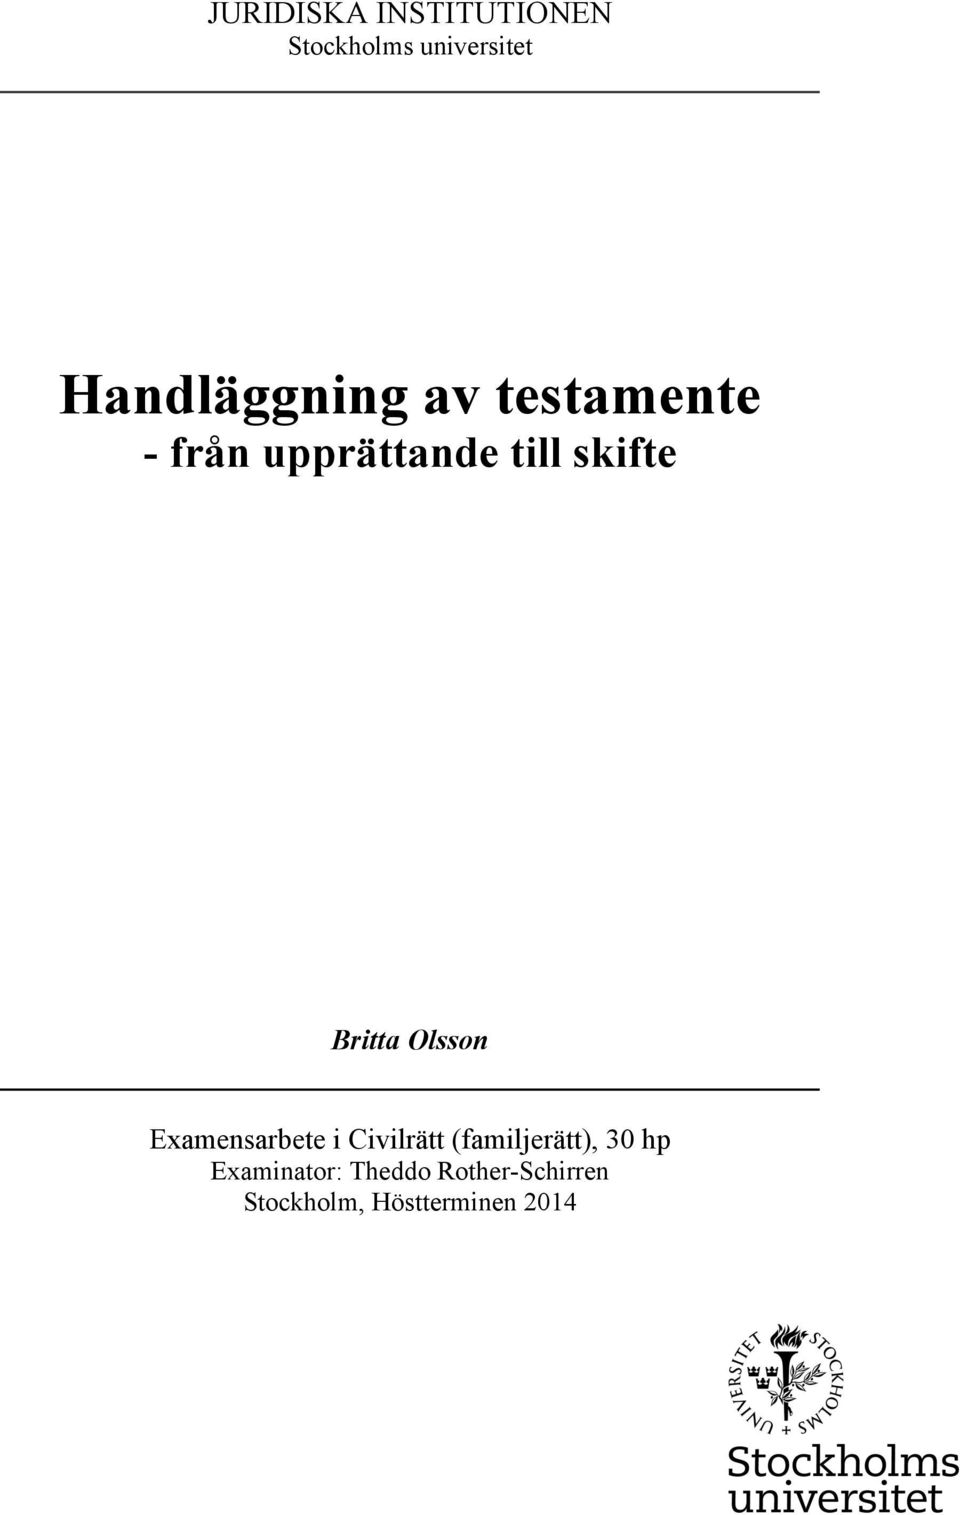 Britta Olsson Examensarbete i Civilrätt (familjerätt), 30